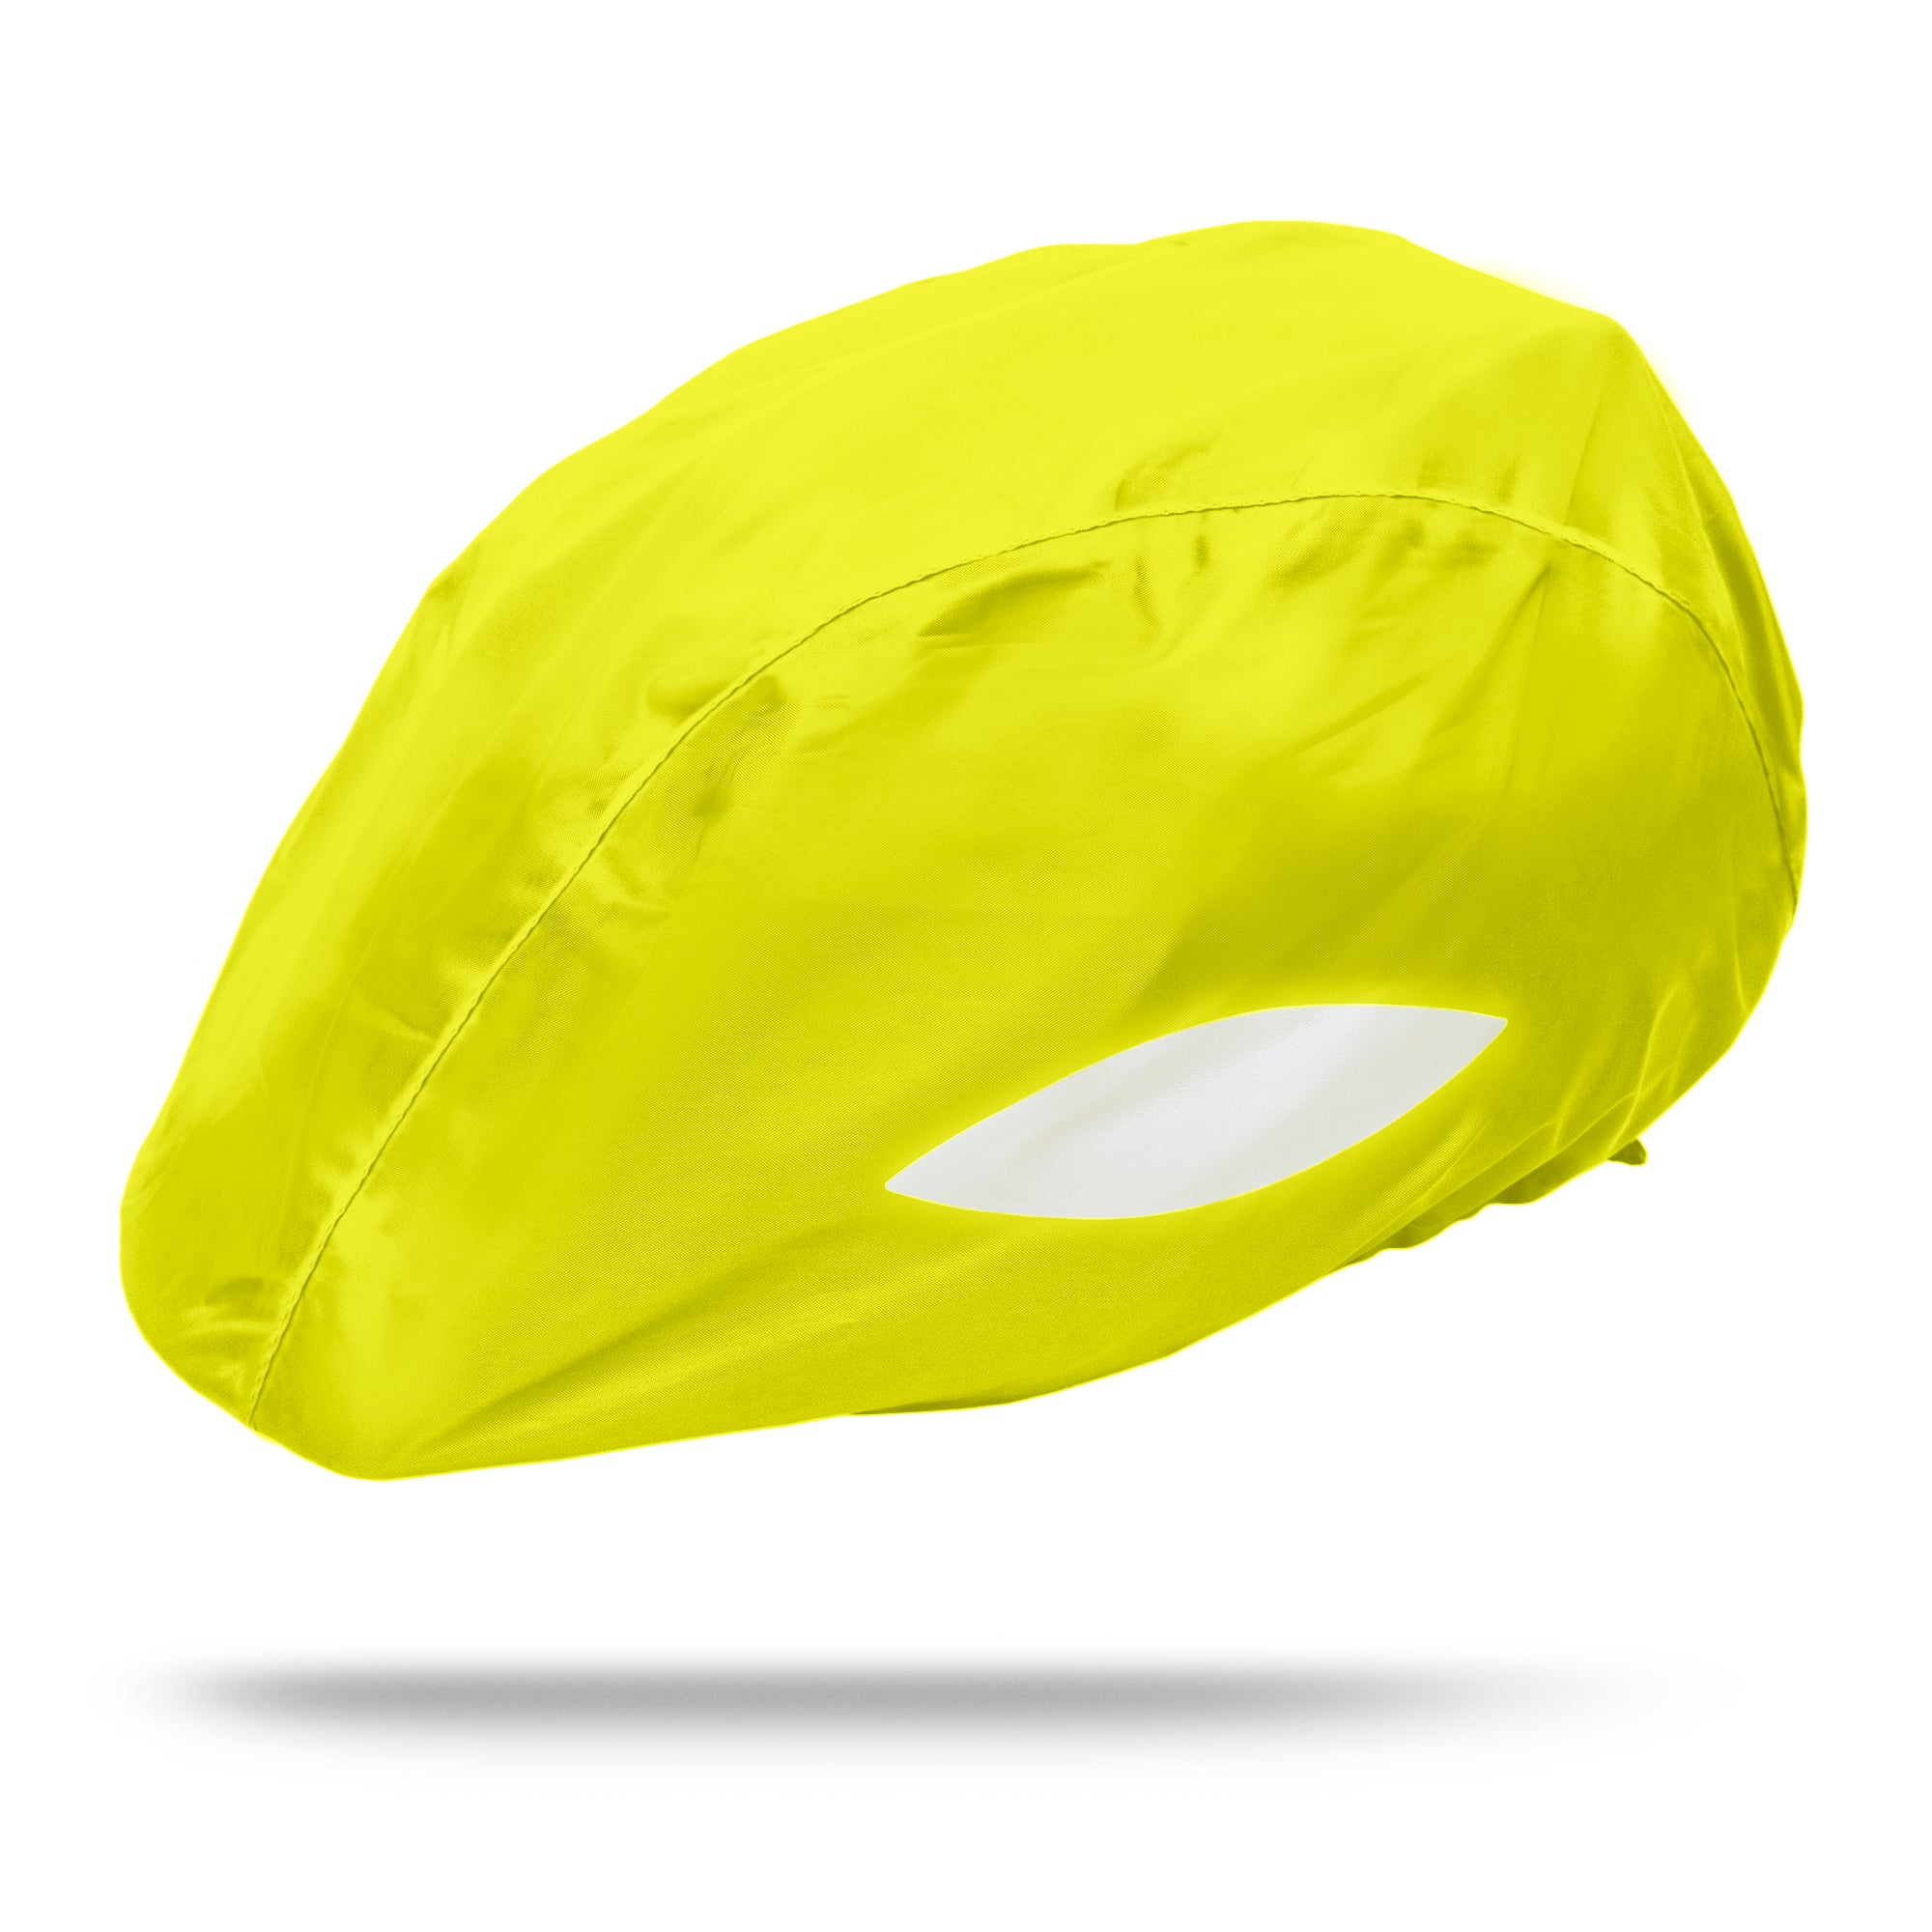 Helmüberzug Neon Bright Yellow  mit Reflektoren